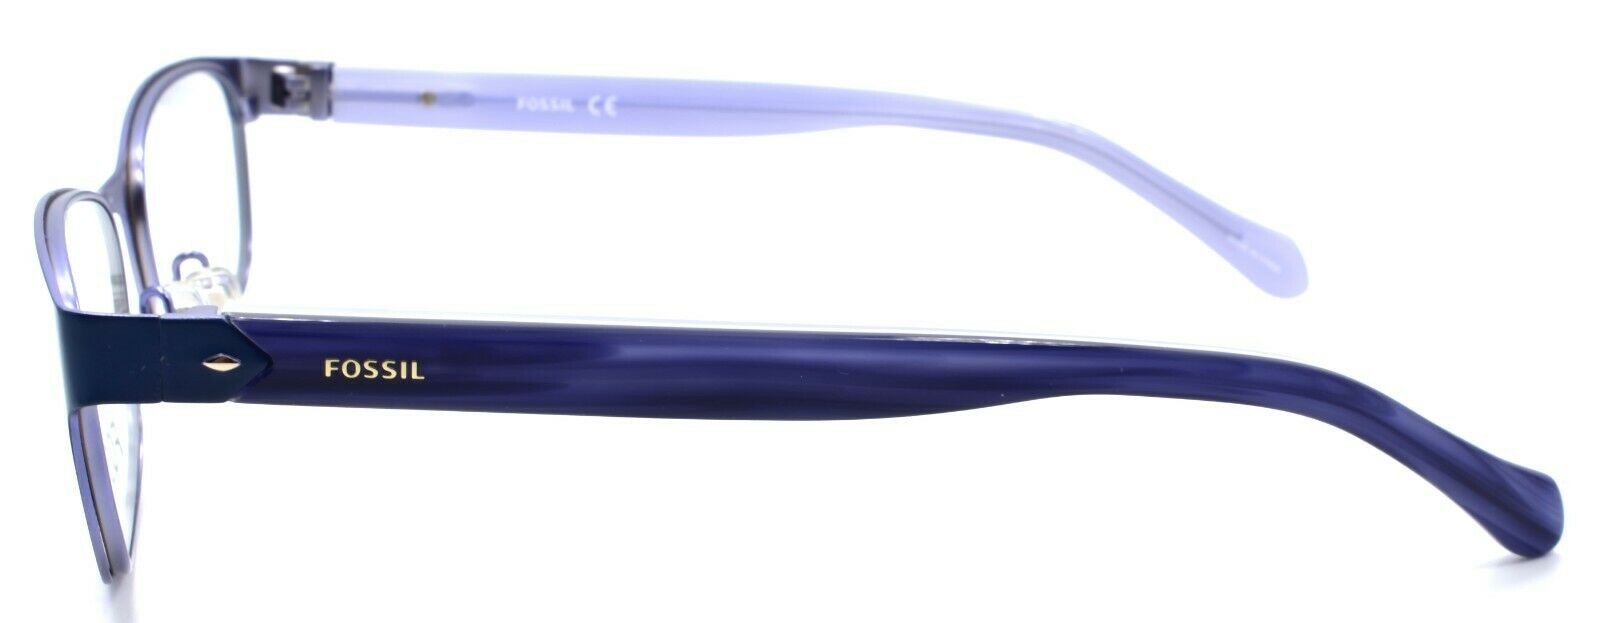 3-Fossil FOS 7023 RCT Women's Eyeglasses Frames 51-17-140 Matte Blue-716736029207-IKSpecs